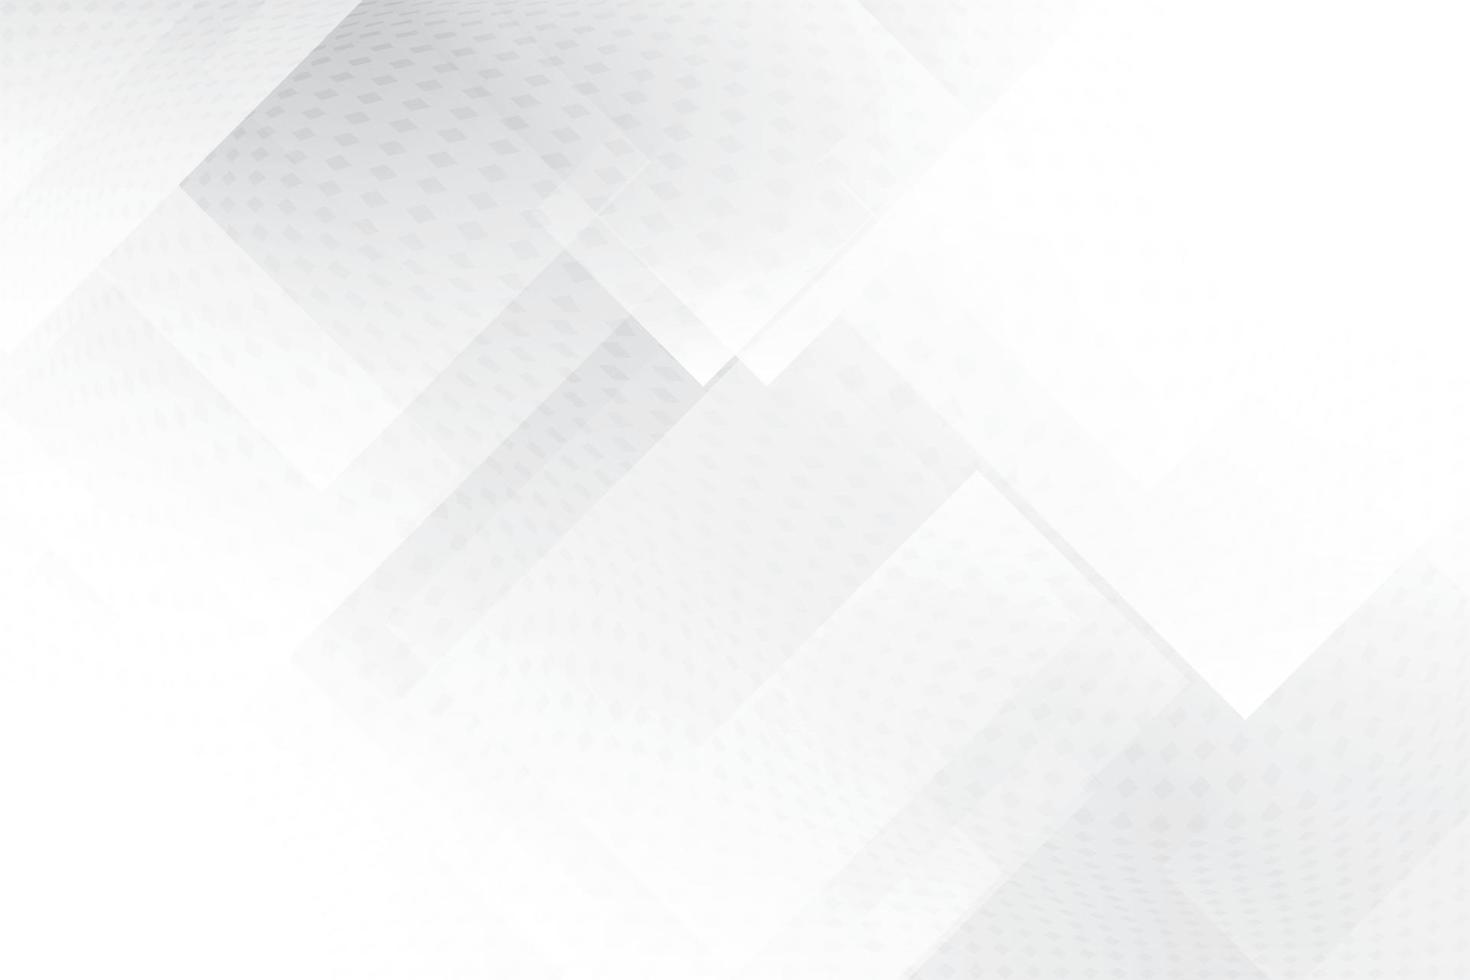 cor branca e cinza abstrata, fundo de design moderno com forma geométrica. ilustração vetorial. vetor